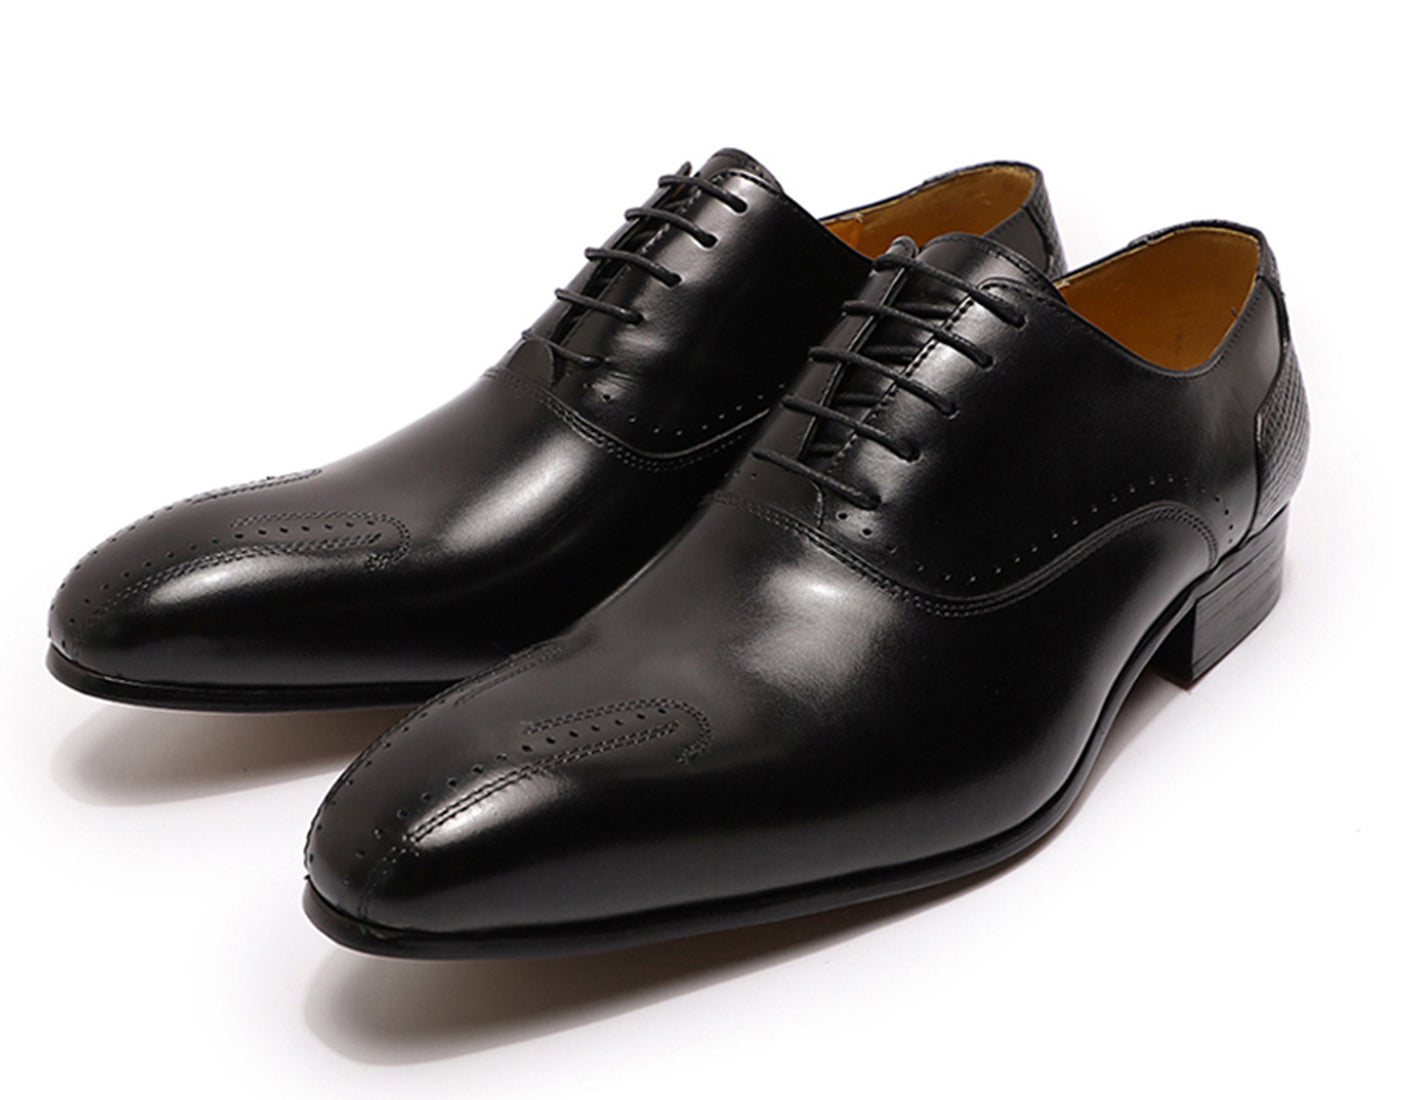 Zapatos Brogues Oxfords para hombre, zapatos formales de esmoquin